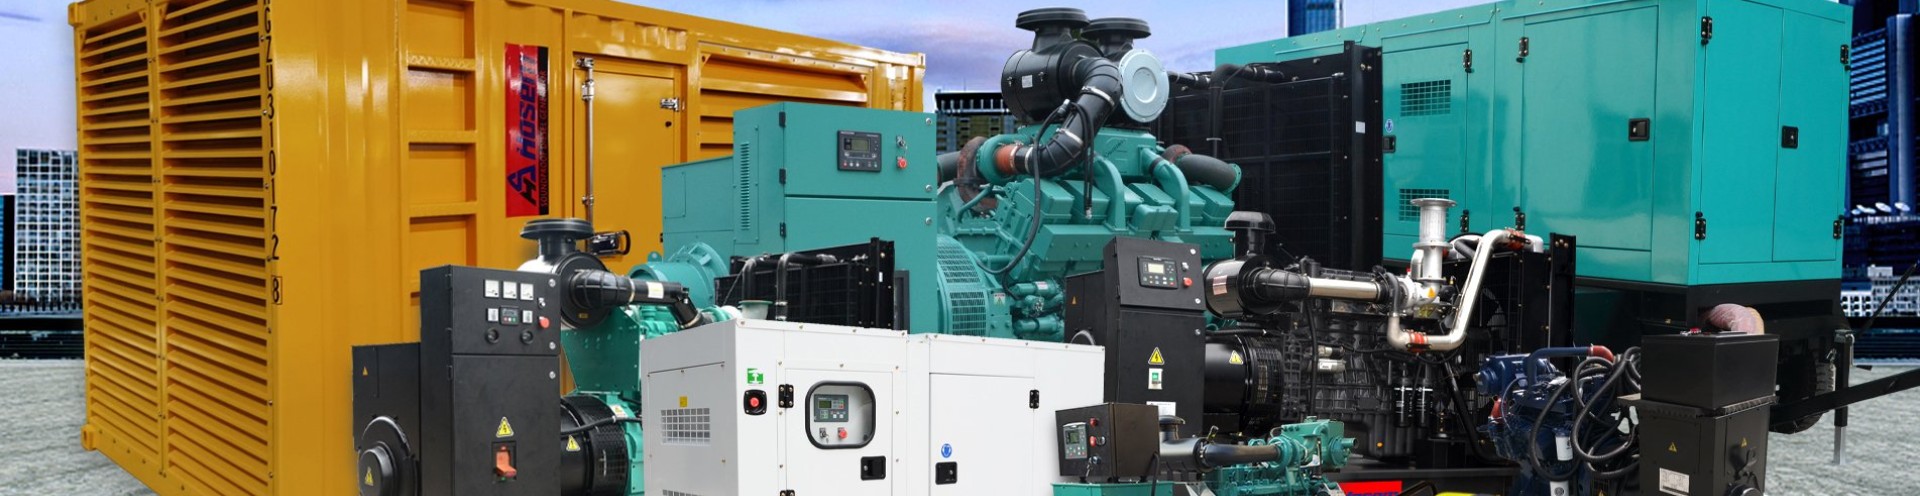 diesel-generator-for-industrial